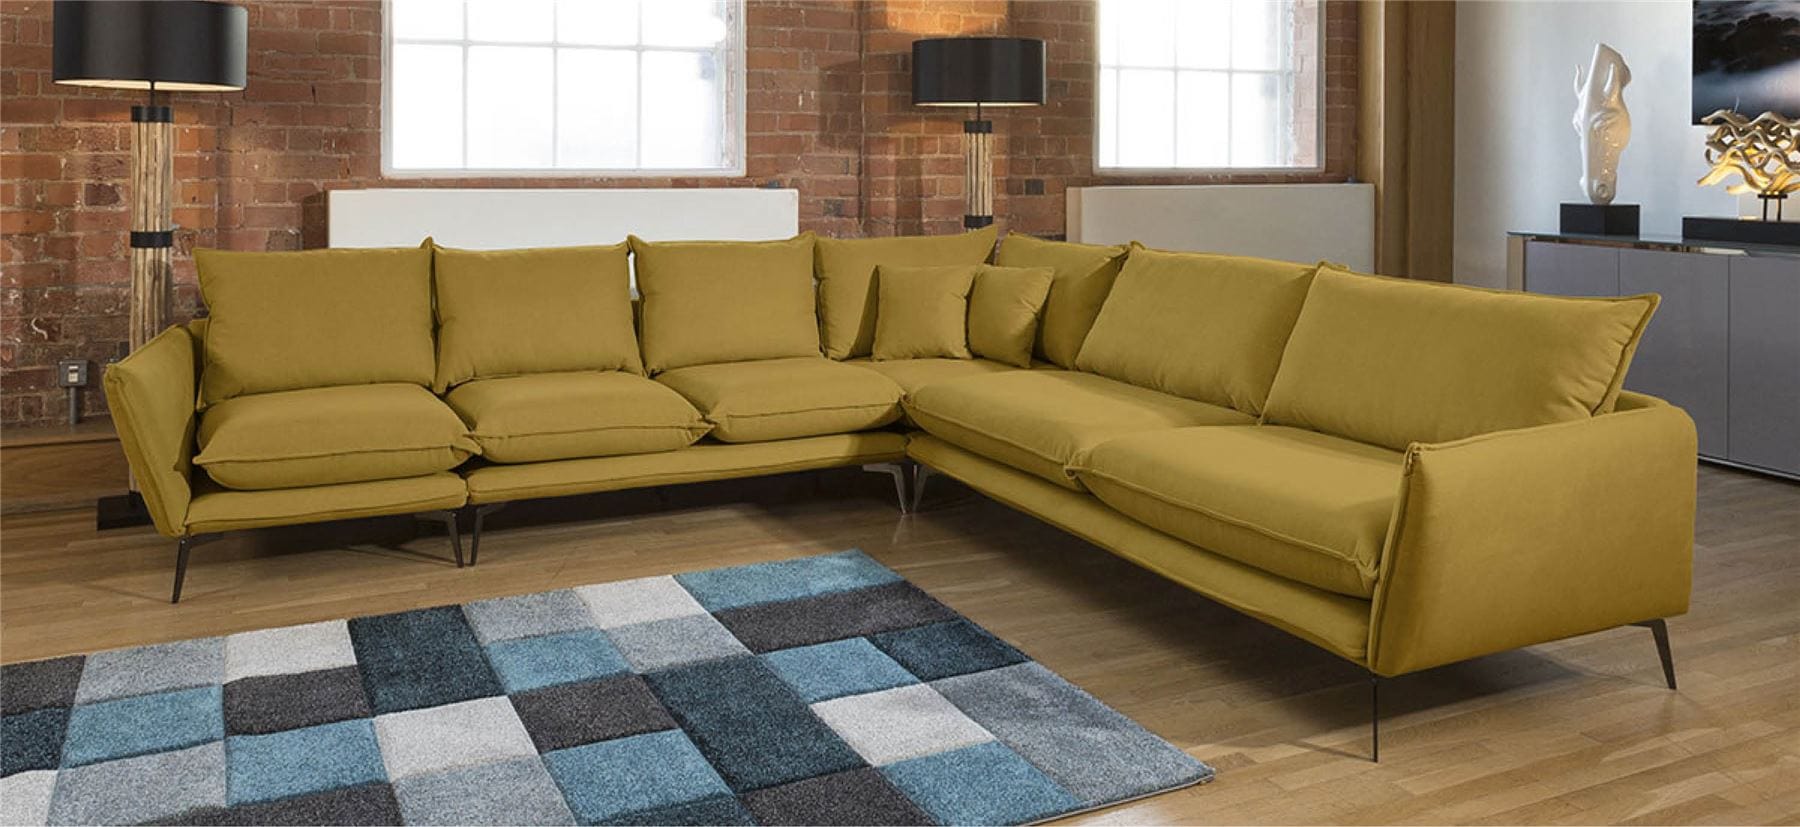 Quatropi Amazing Rachel Large Corner Modular Sofa Many Fabrics 3.2 x 3.05m